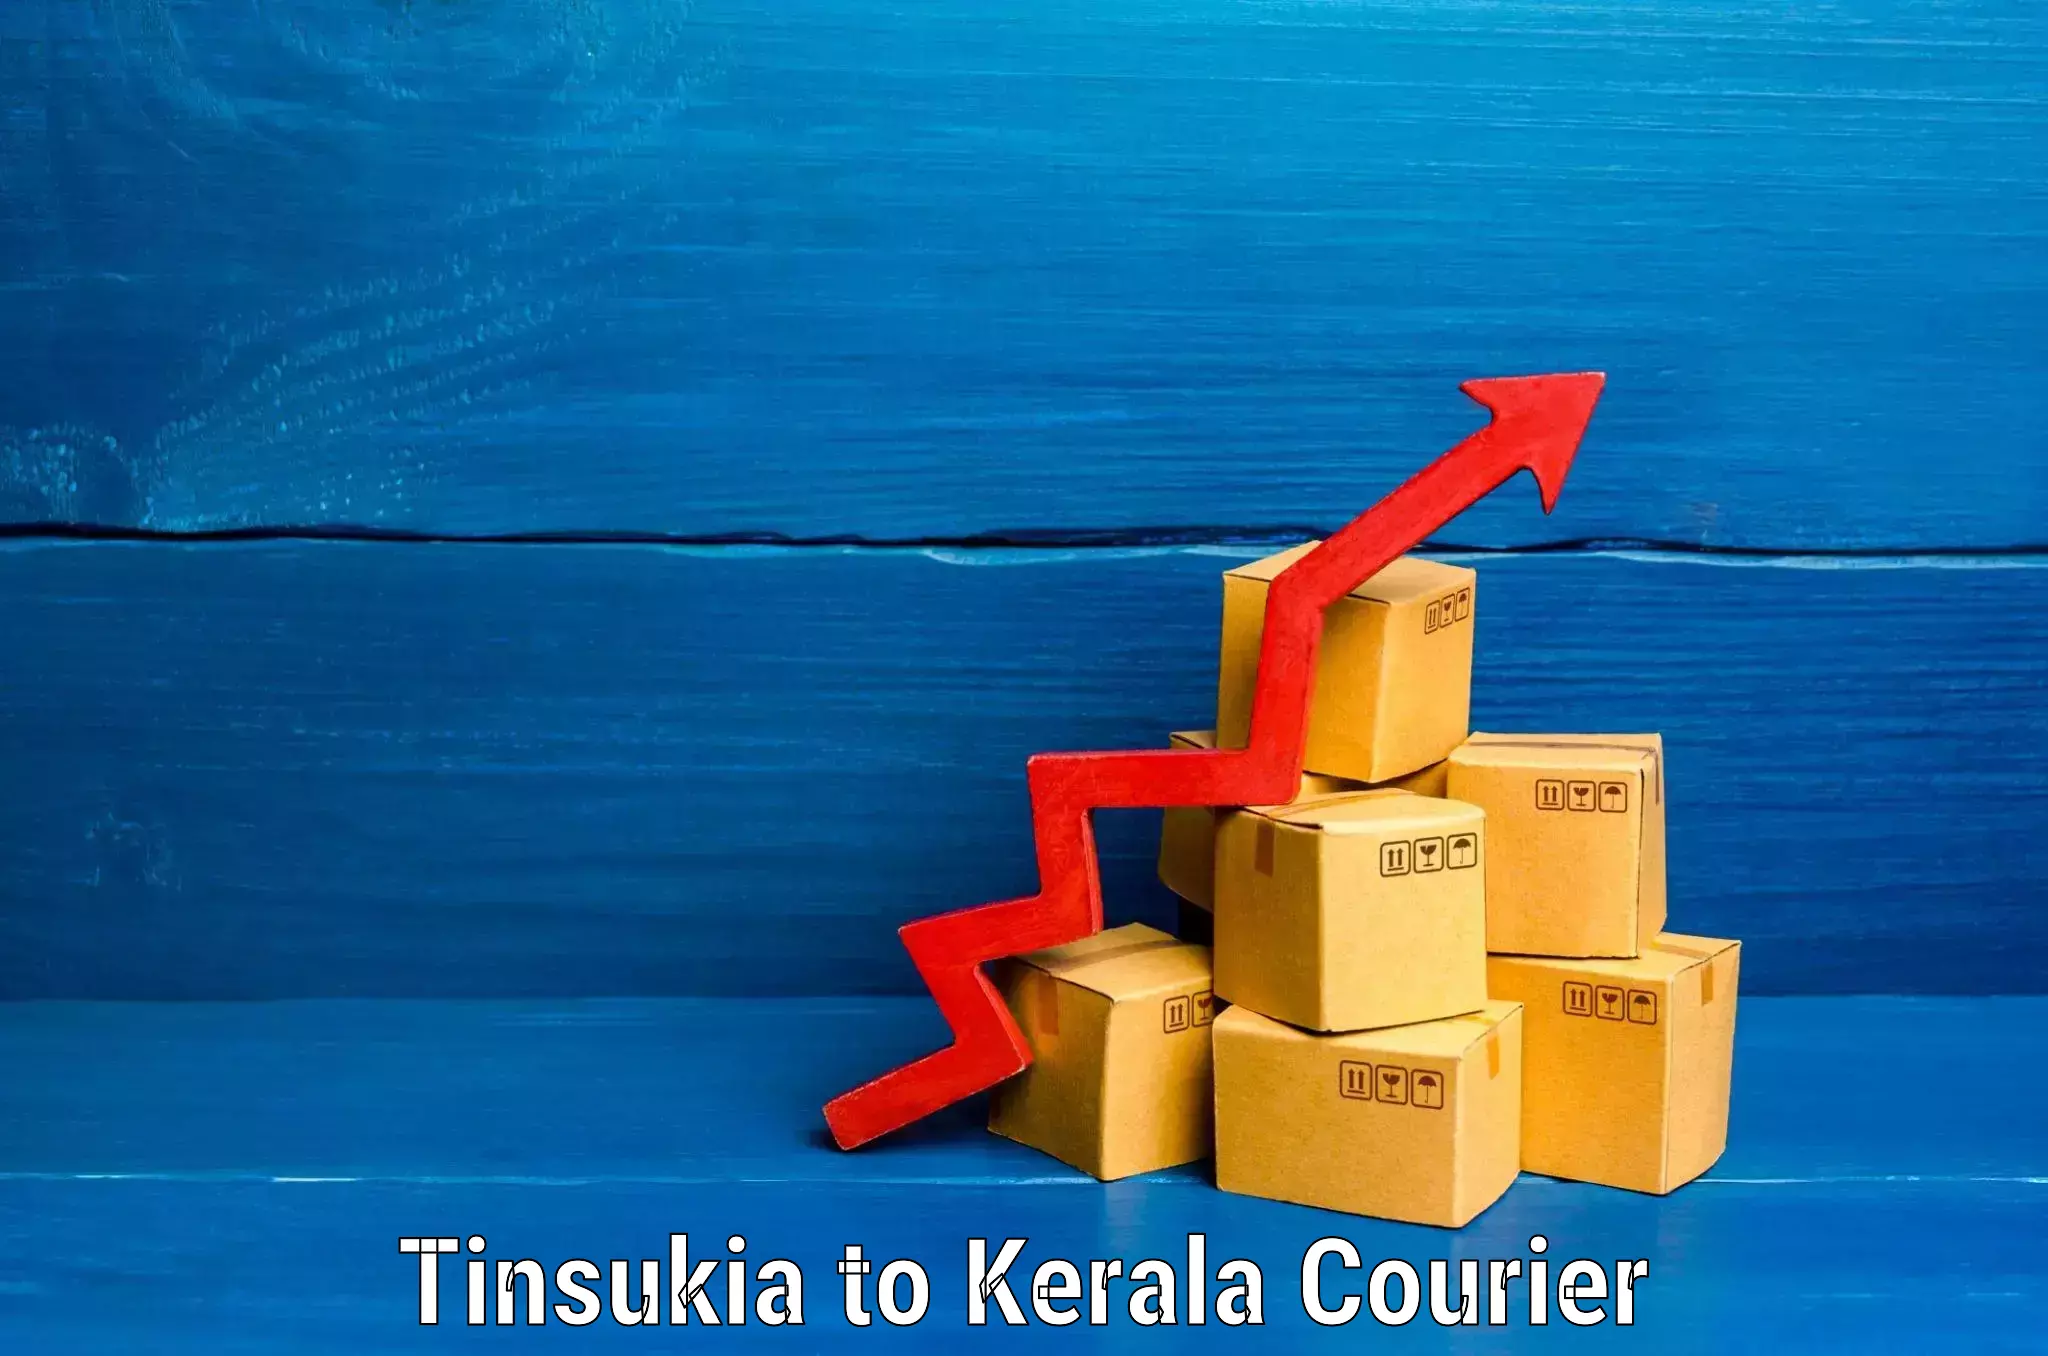 Luggage delivery estimate Tinsukia to Kuttikol